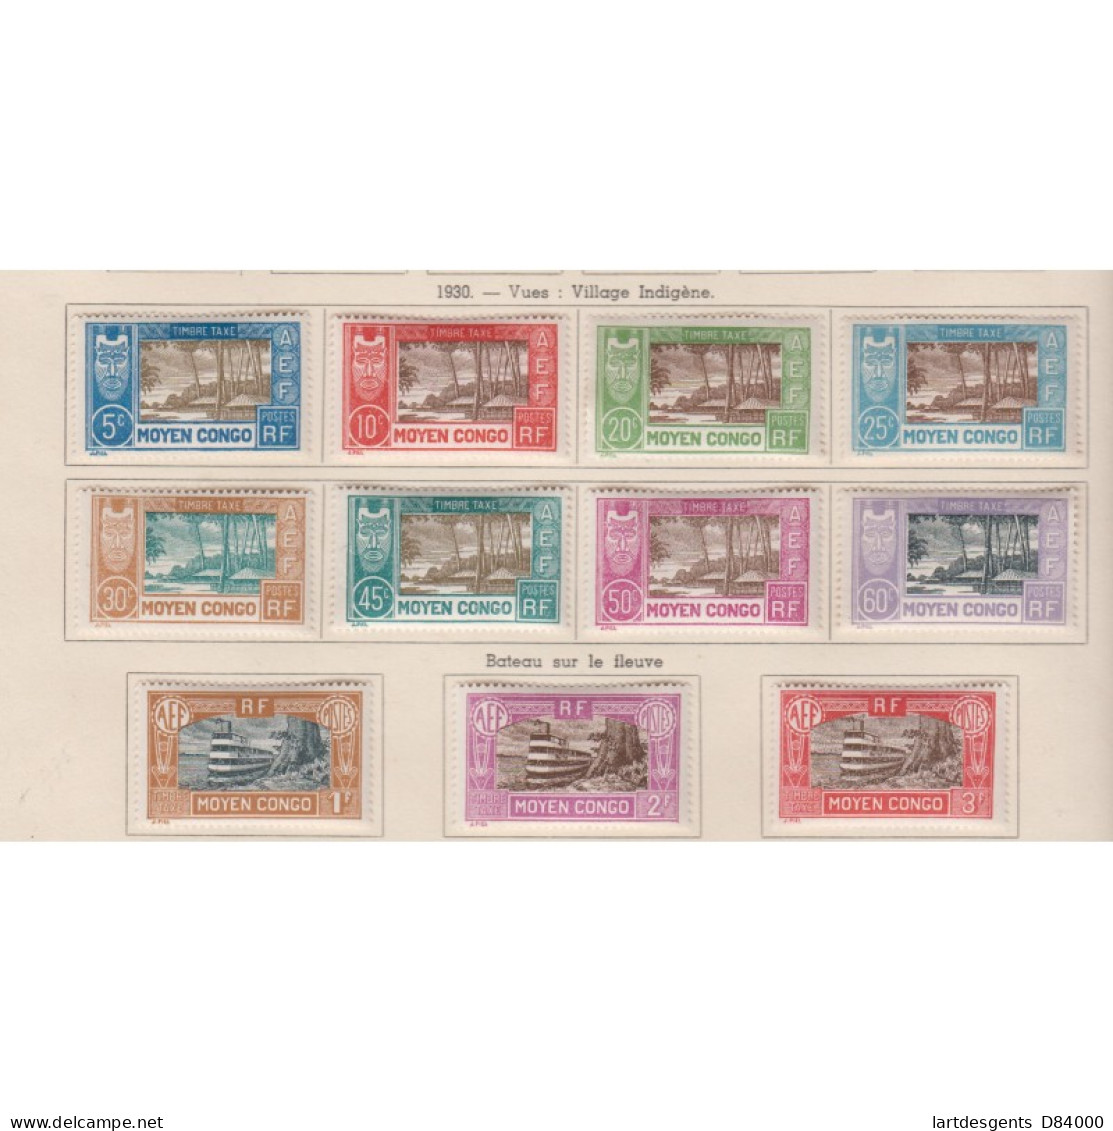 Moyen Congo 33 Timbres Taxes De 1928-1933 - N°1 à N°33 - Neufs*, Lartdesgents.fr - Lettres & Documents